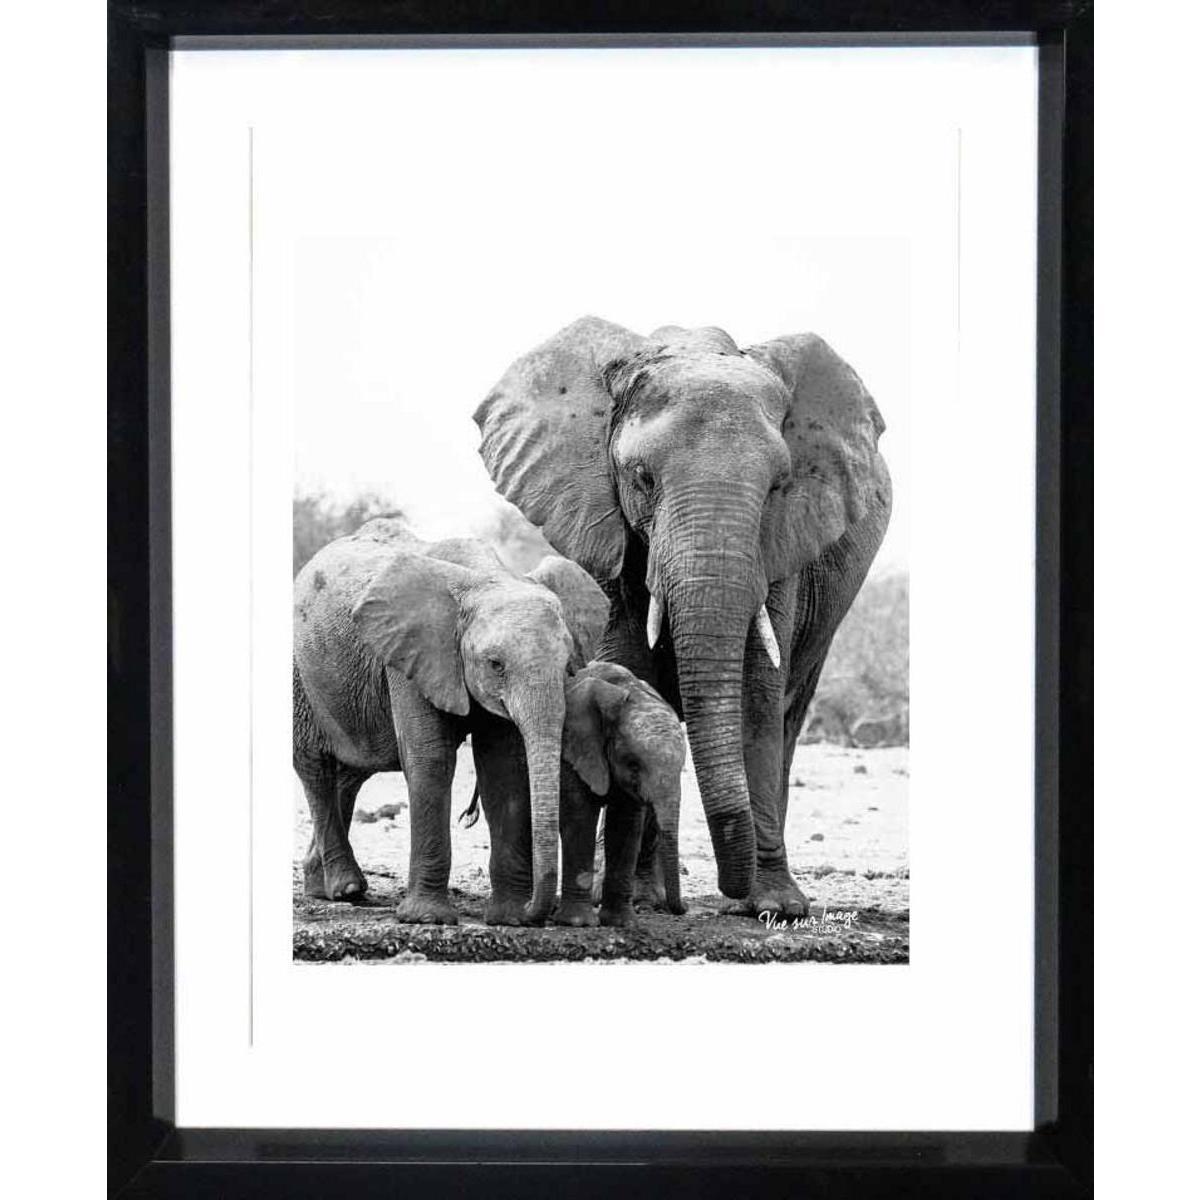 Cadre photo décoratif - Plastique - 20 x 25 cm - Noir et blanc